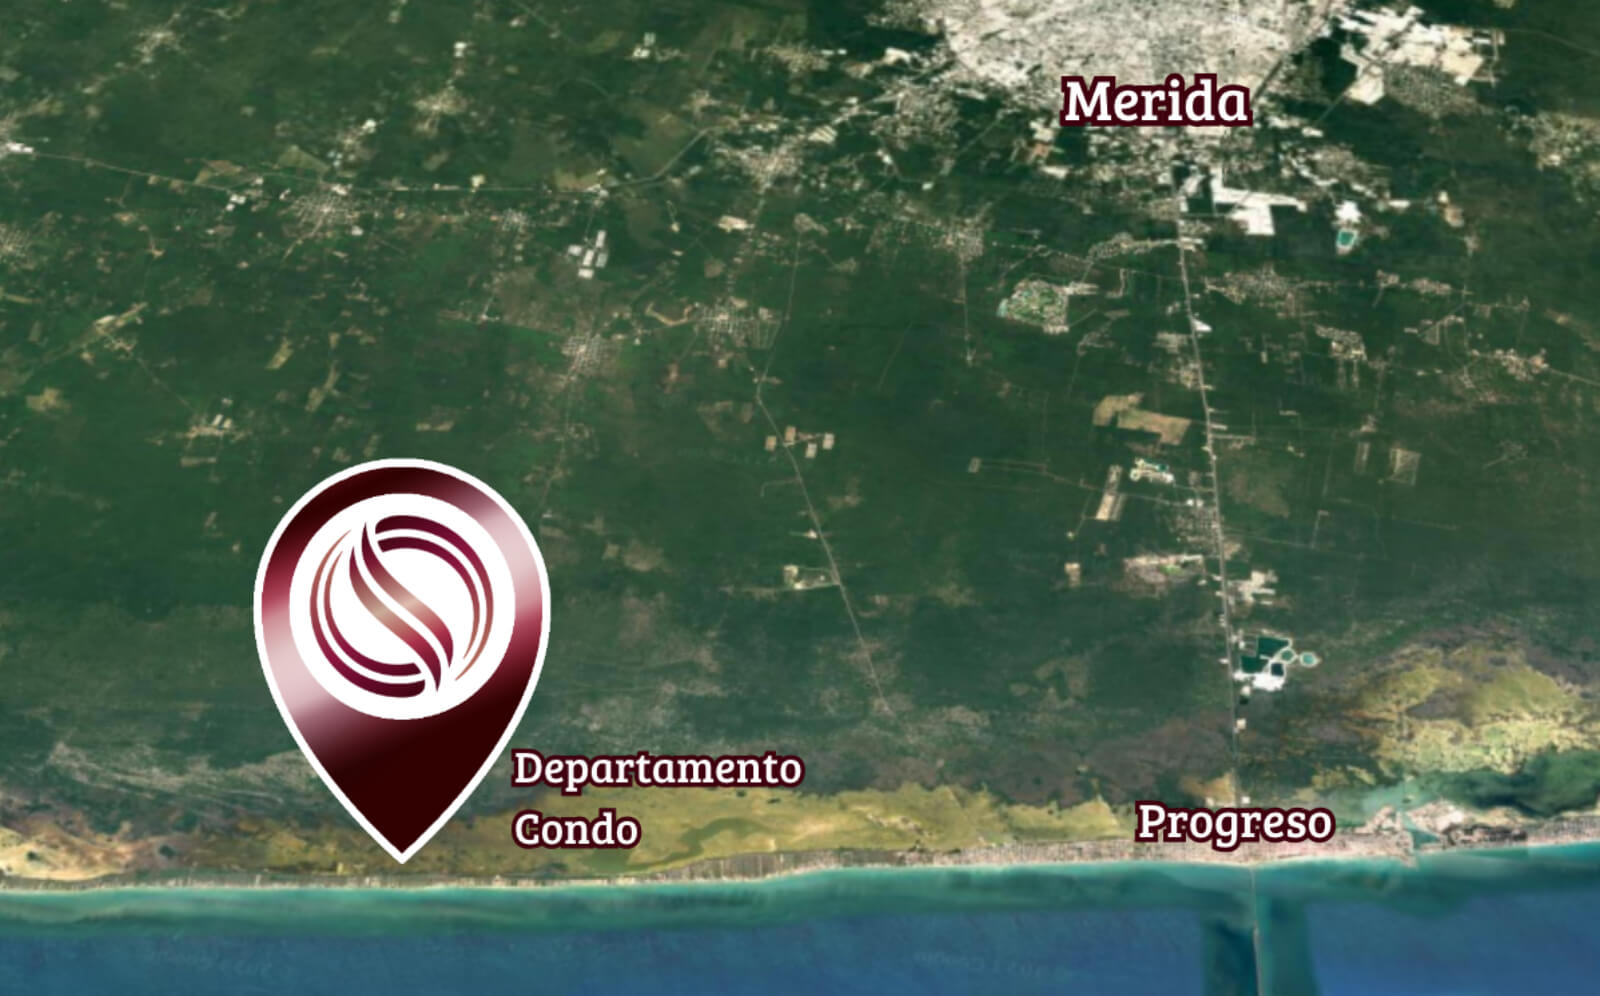 Apartamento con acceso al mar, club de playa, areas verdes y amenidades, en pre-construccion en venta Chicxulub Yucatan